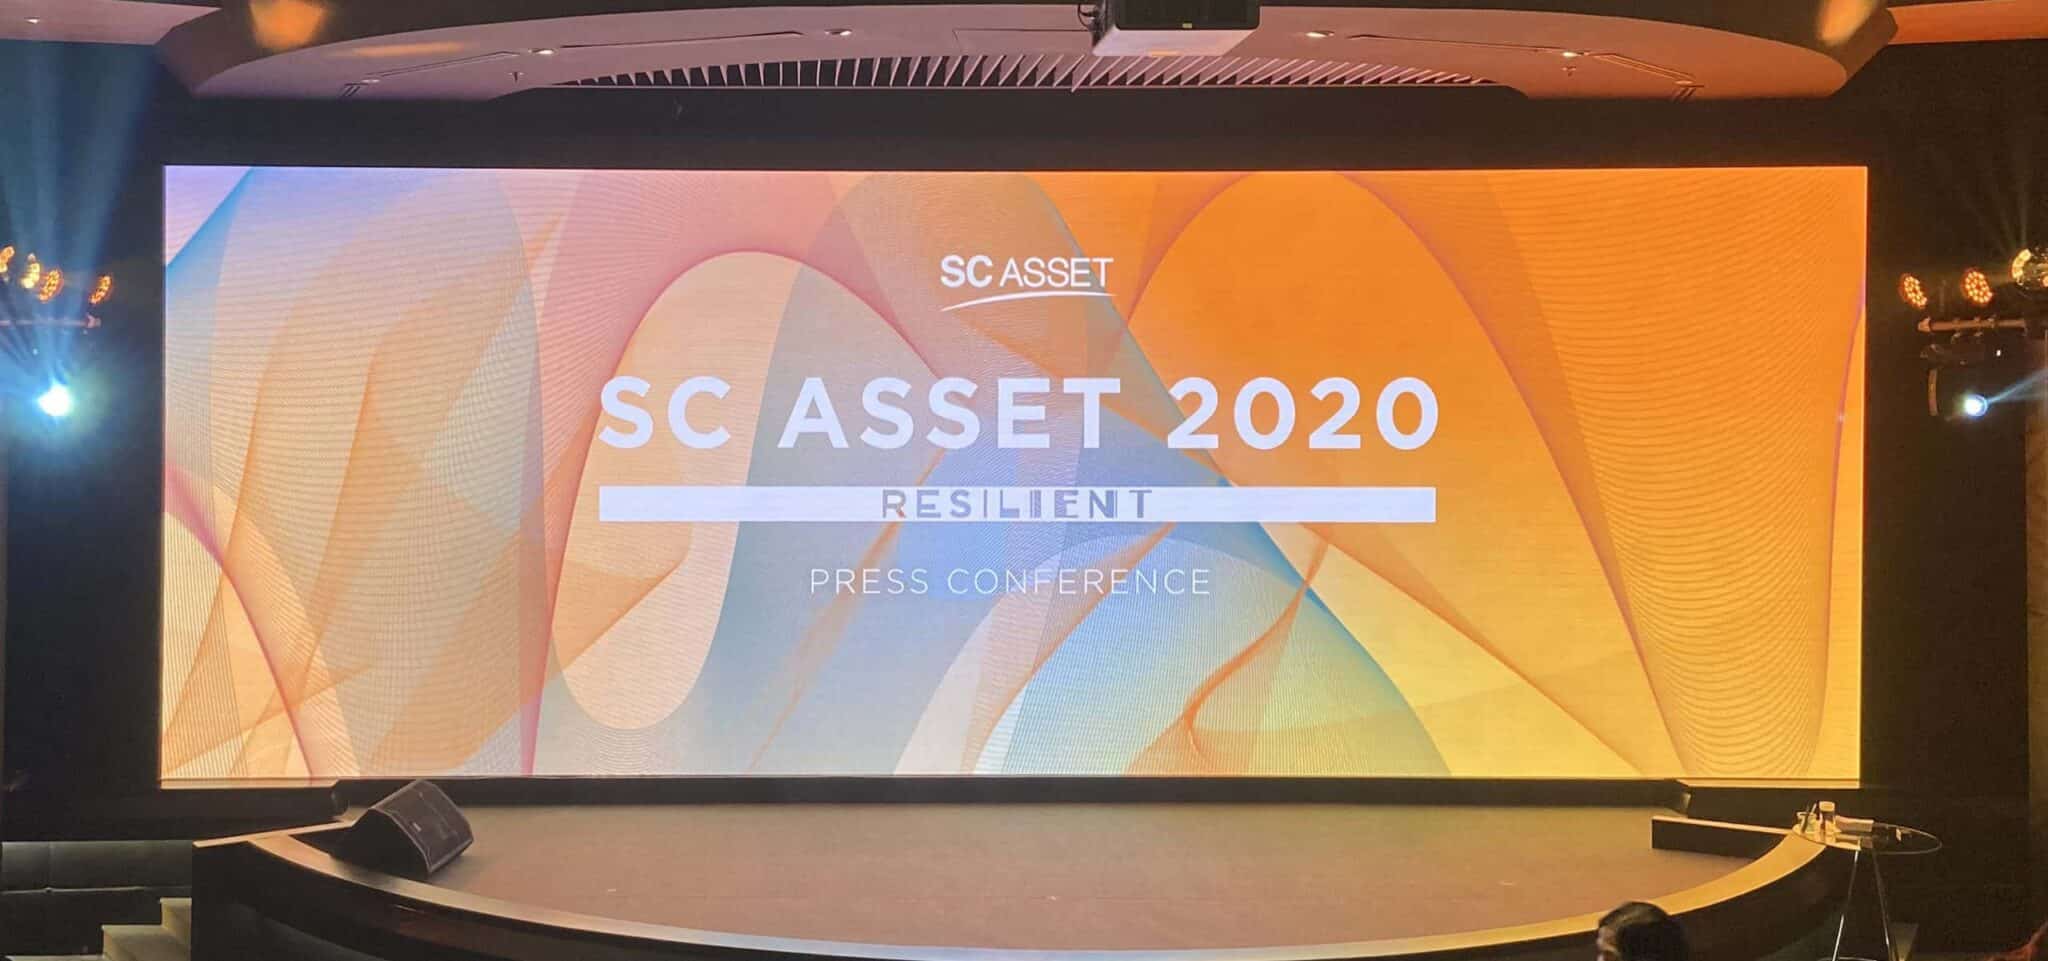 Resilient ยืดหยุ่นเพื่อรับมือความยุ่งเหยิง กลยุทธ์ฝ่าวิกฤตเศรษฐกิจไทย 2020 ของ SC Asset